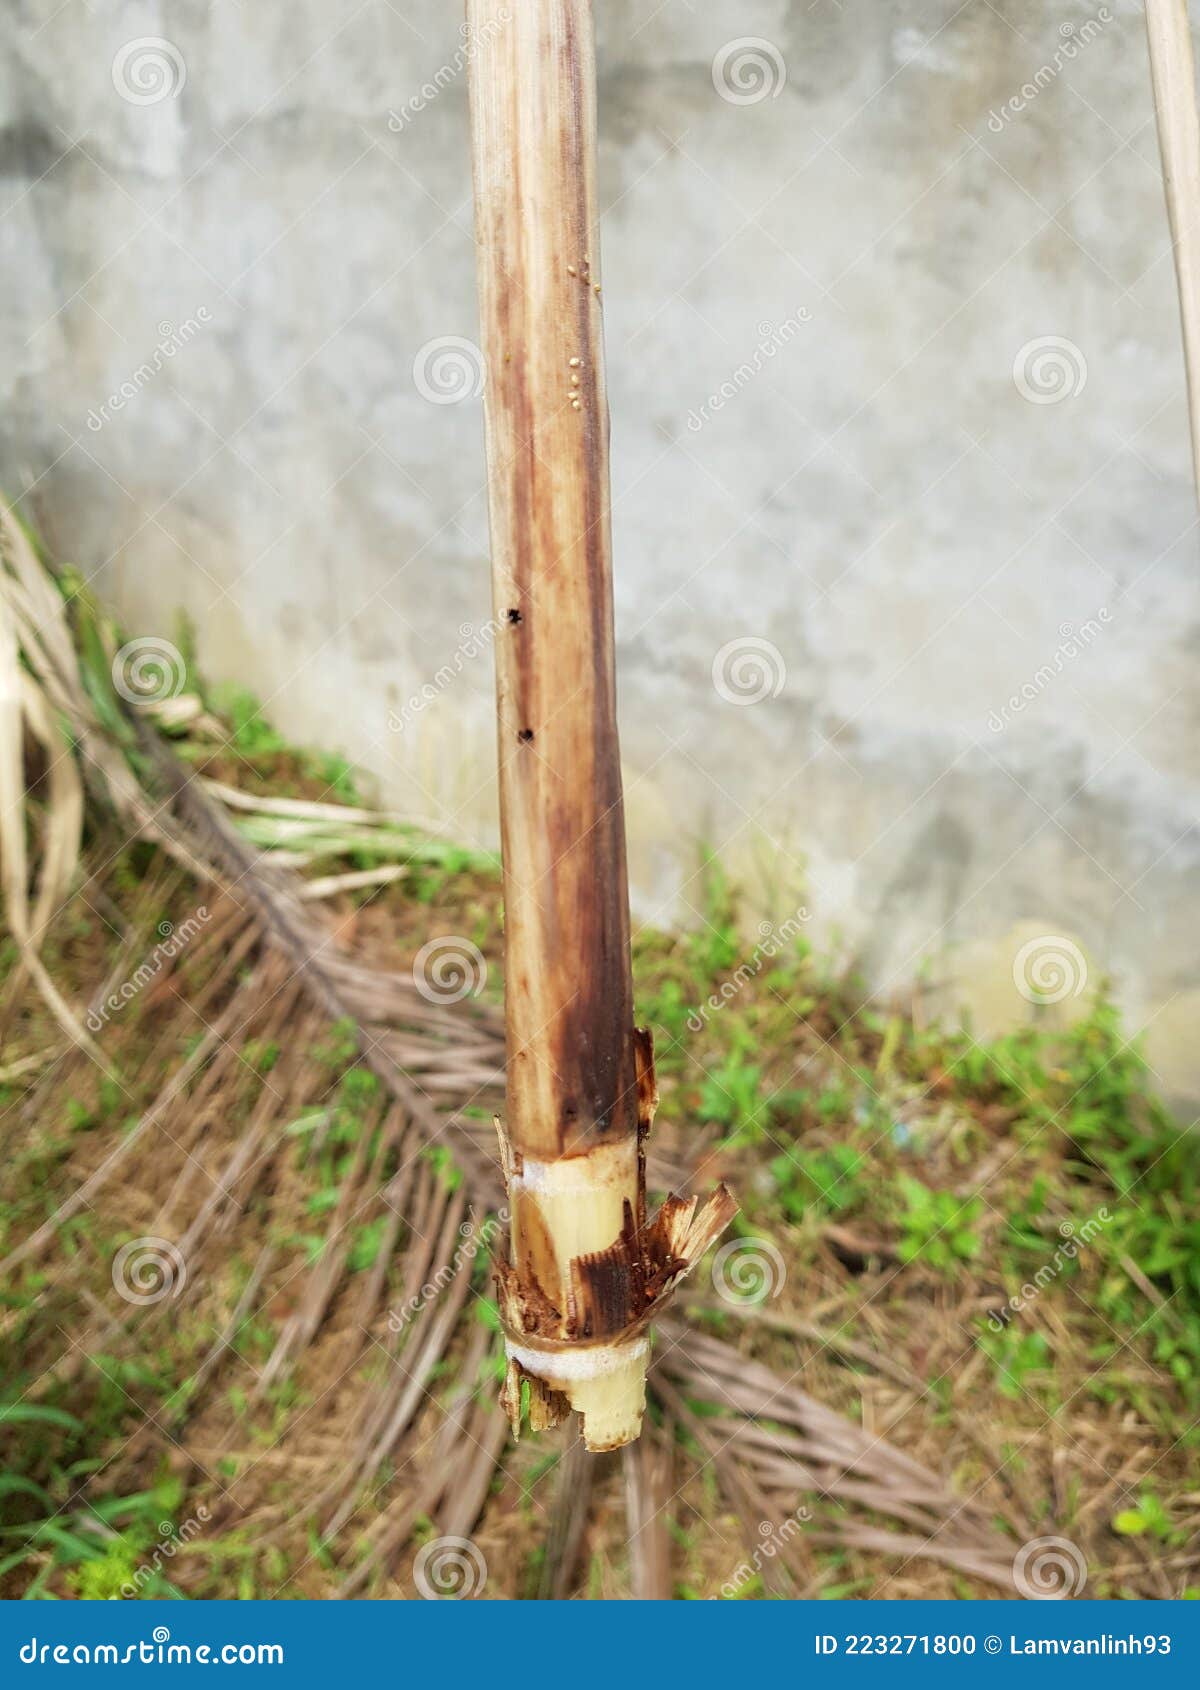 sugarcane stem borer injured in viet nam.